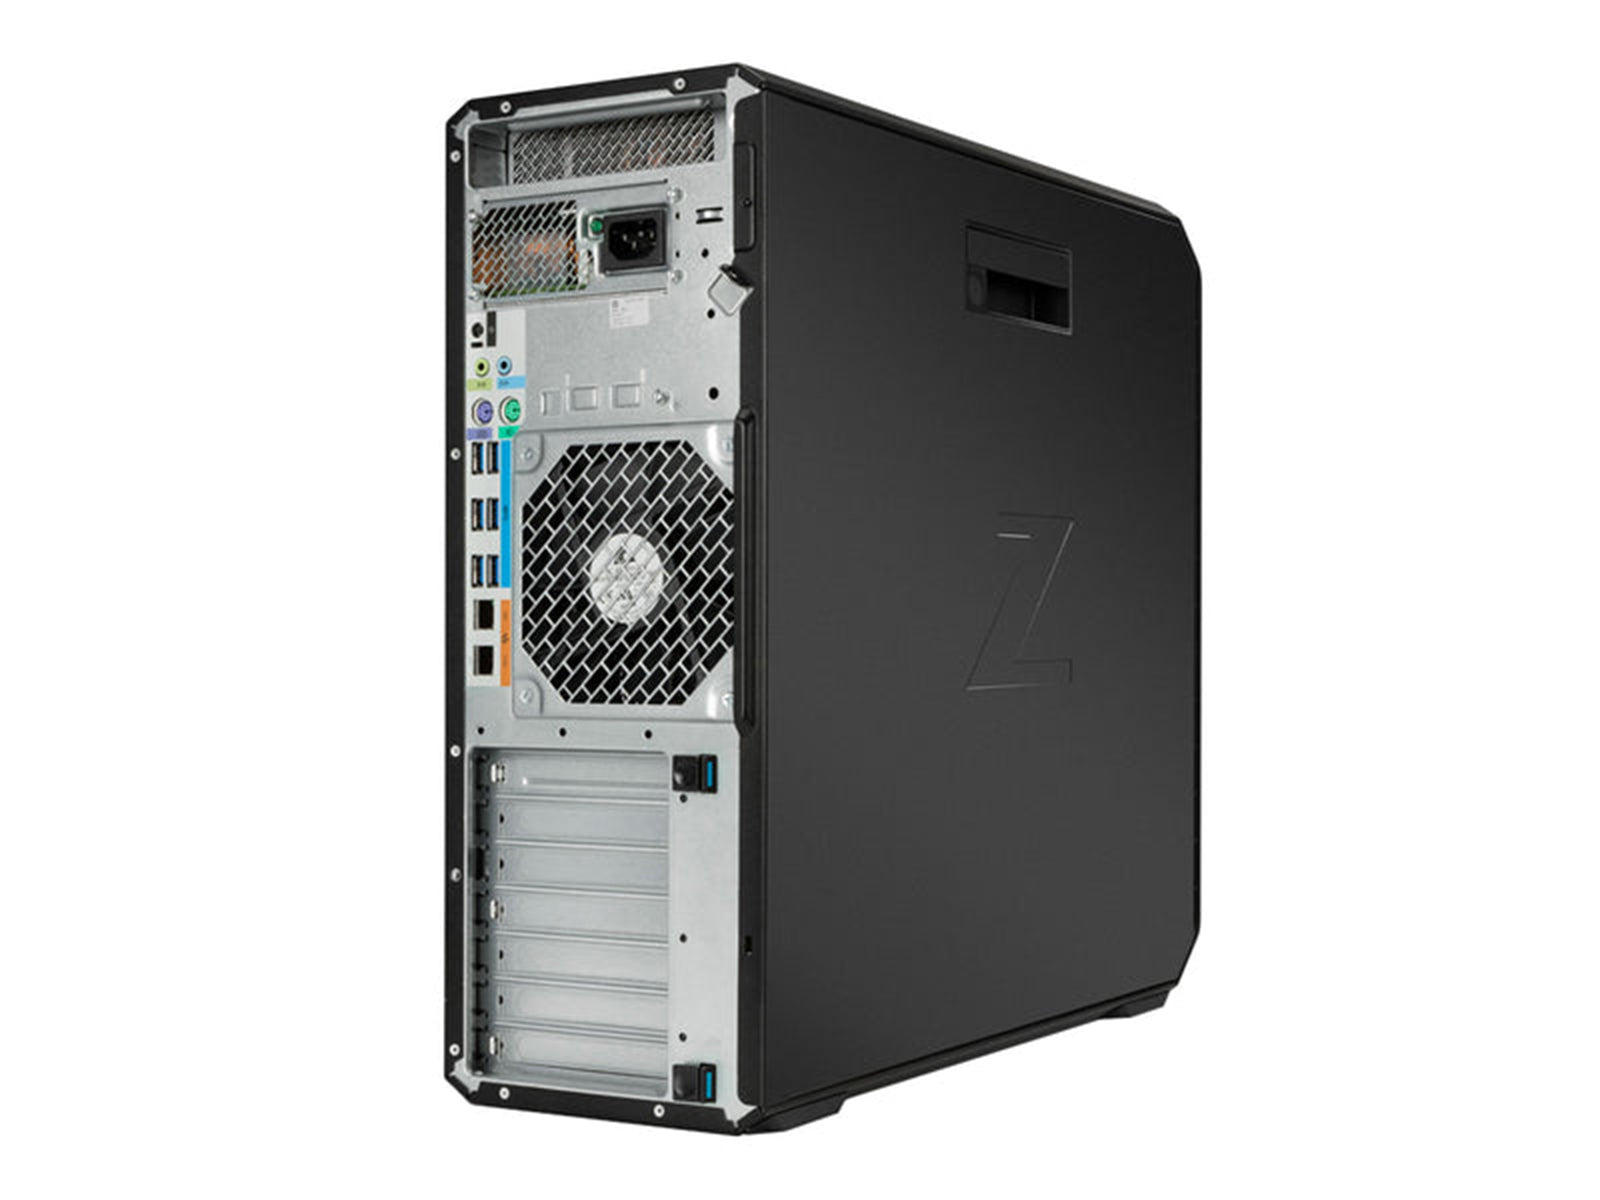 Station de travail HP Z6 G4 | Intel Xeon Argent 4208 | 48 Go DDR4 | SSD NVMe de 1 To | Quadro P2200 | Win10 Pro